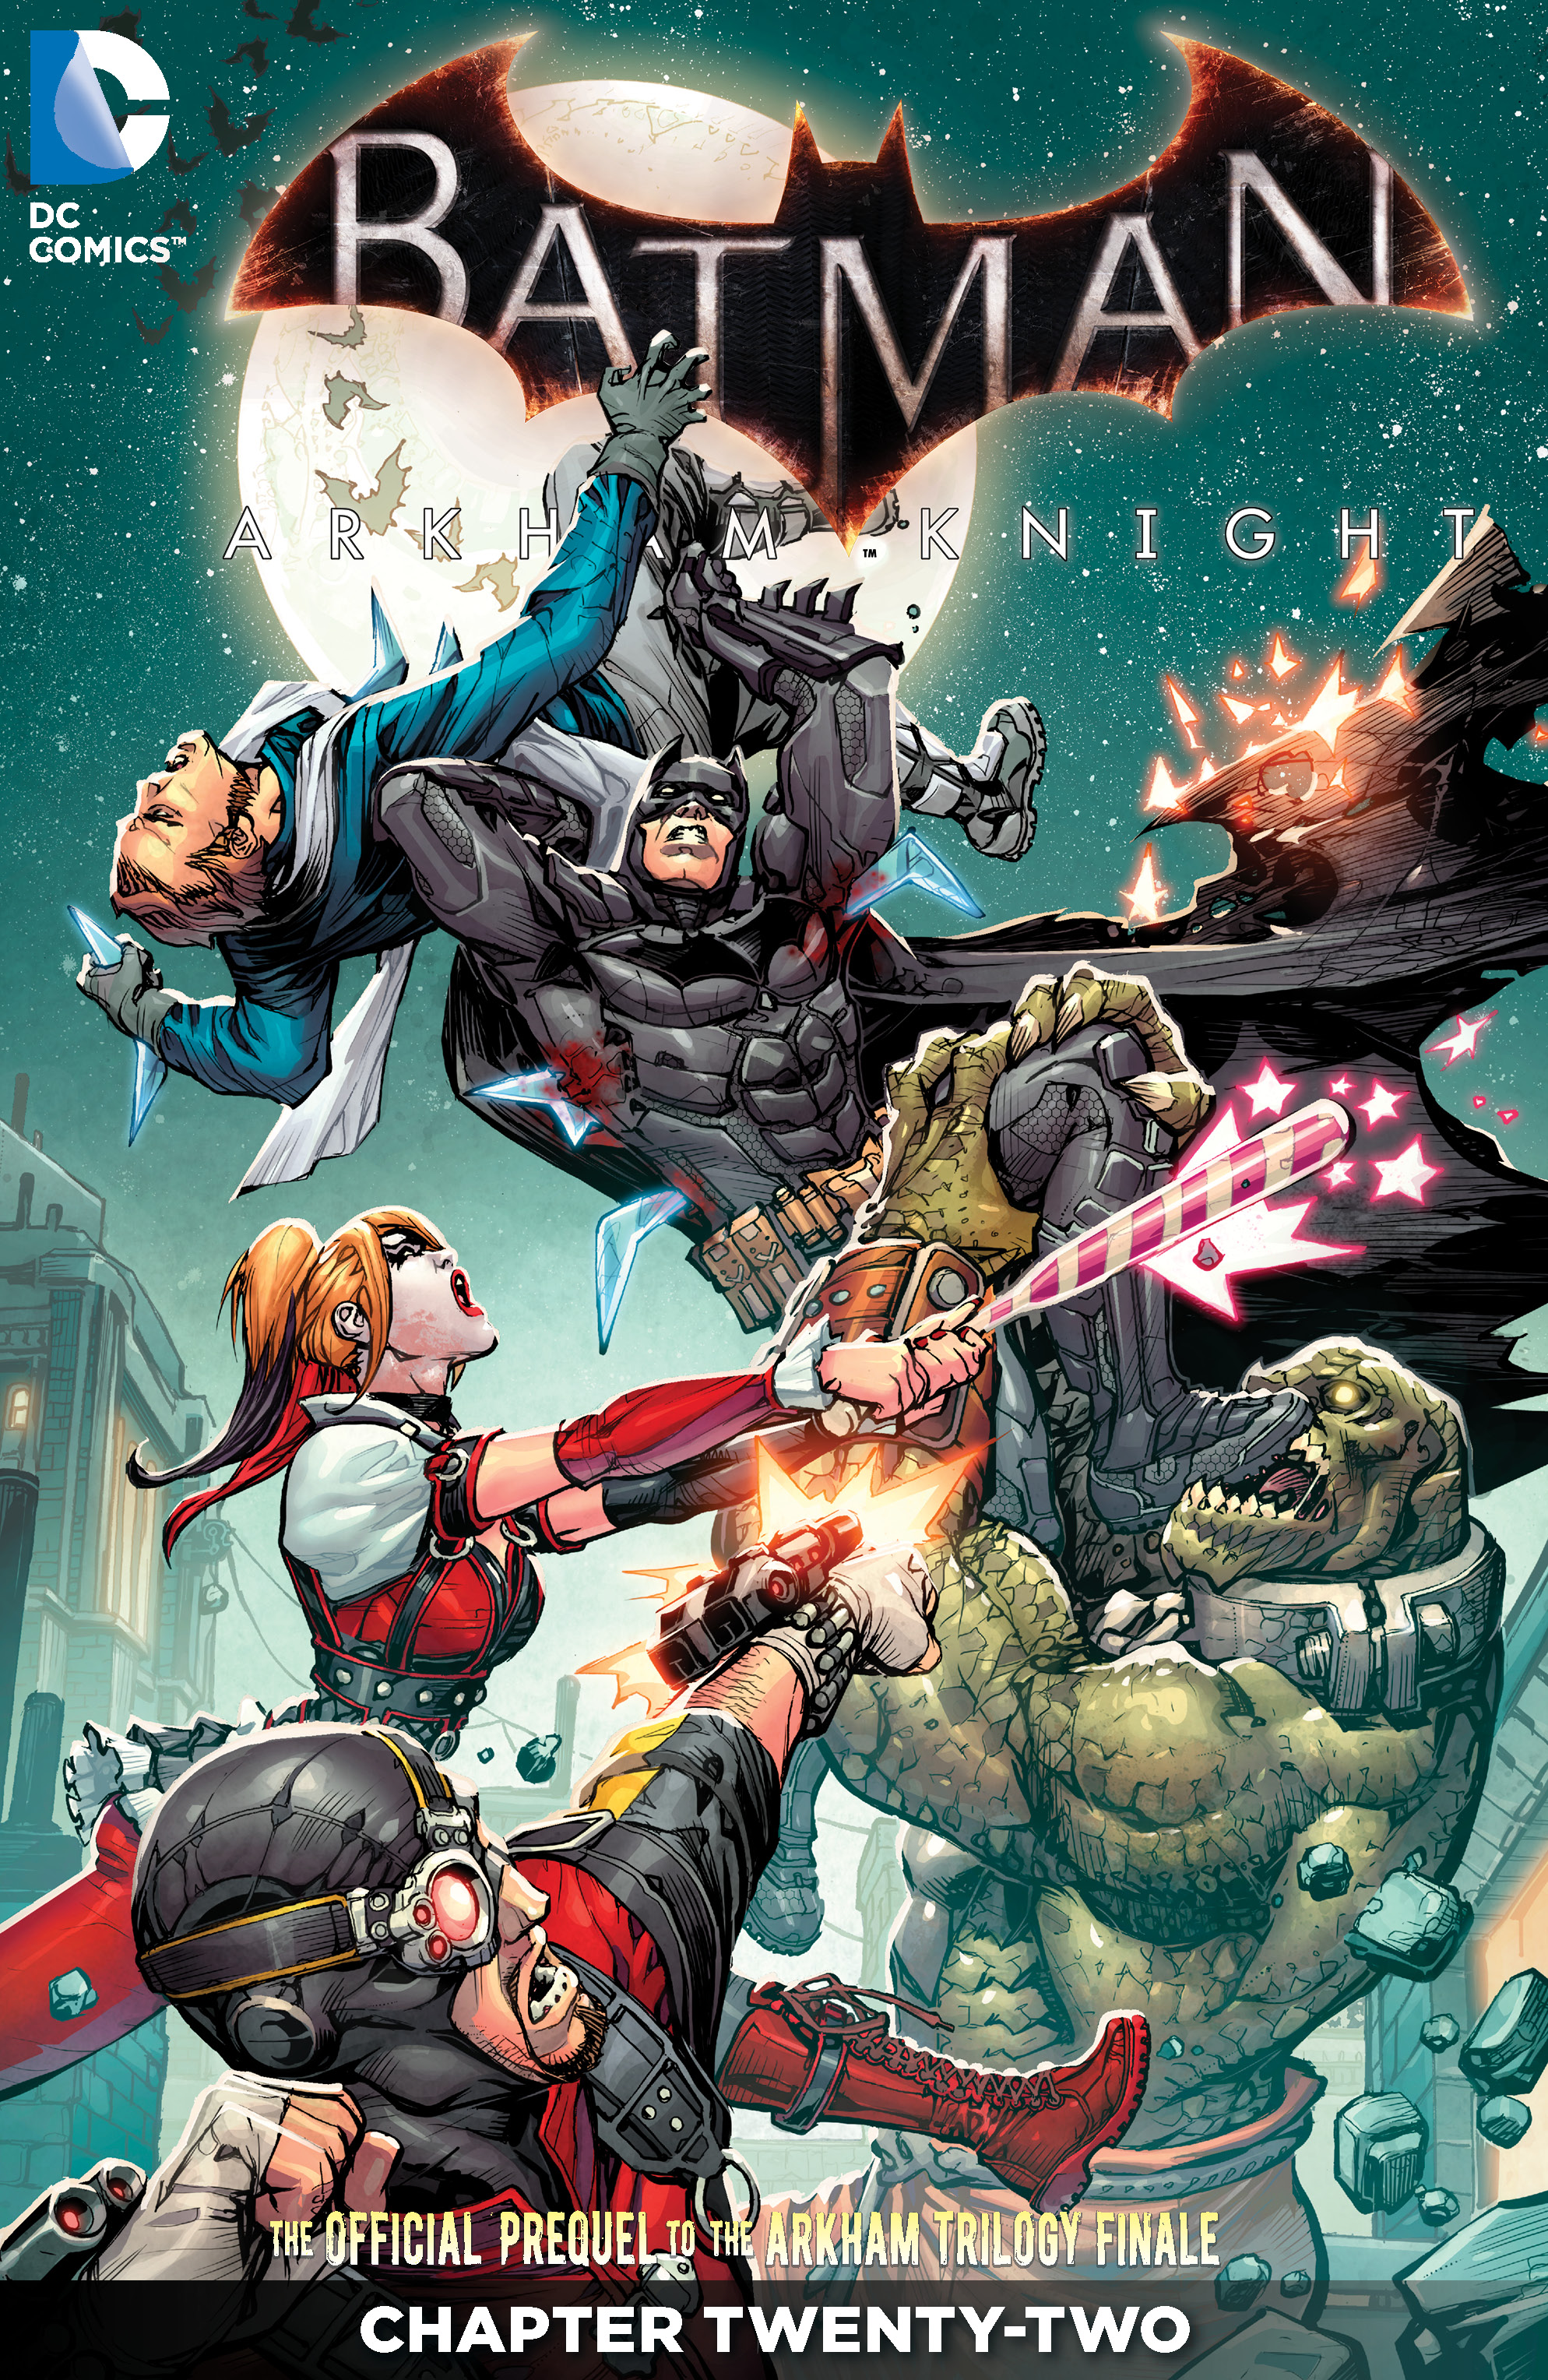 Batman: Arkham Knight #22 preview images